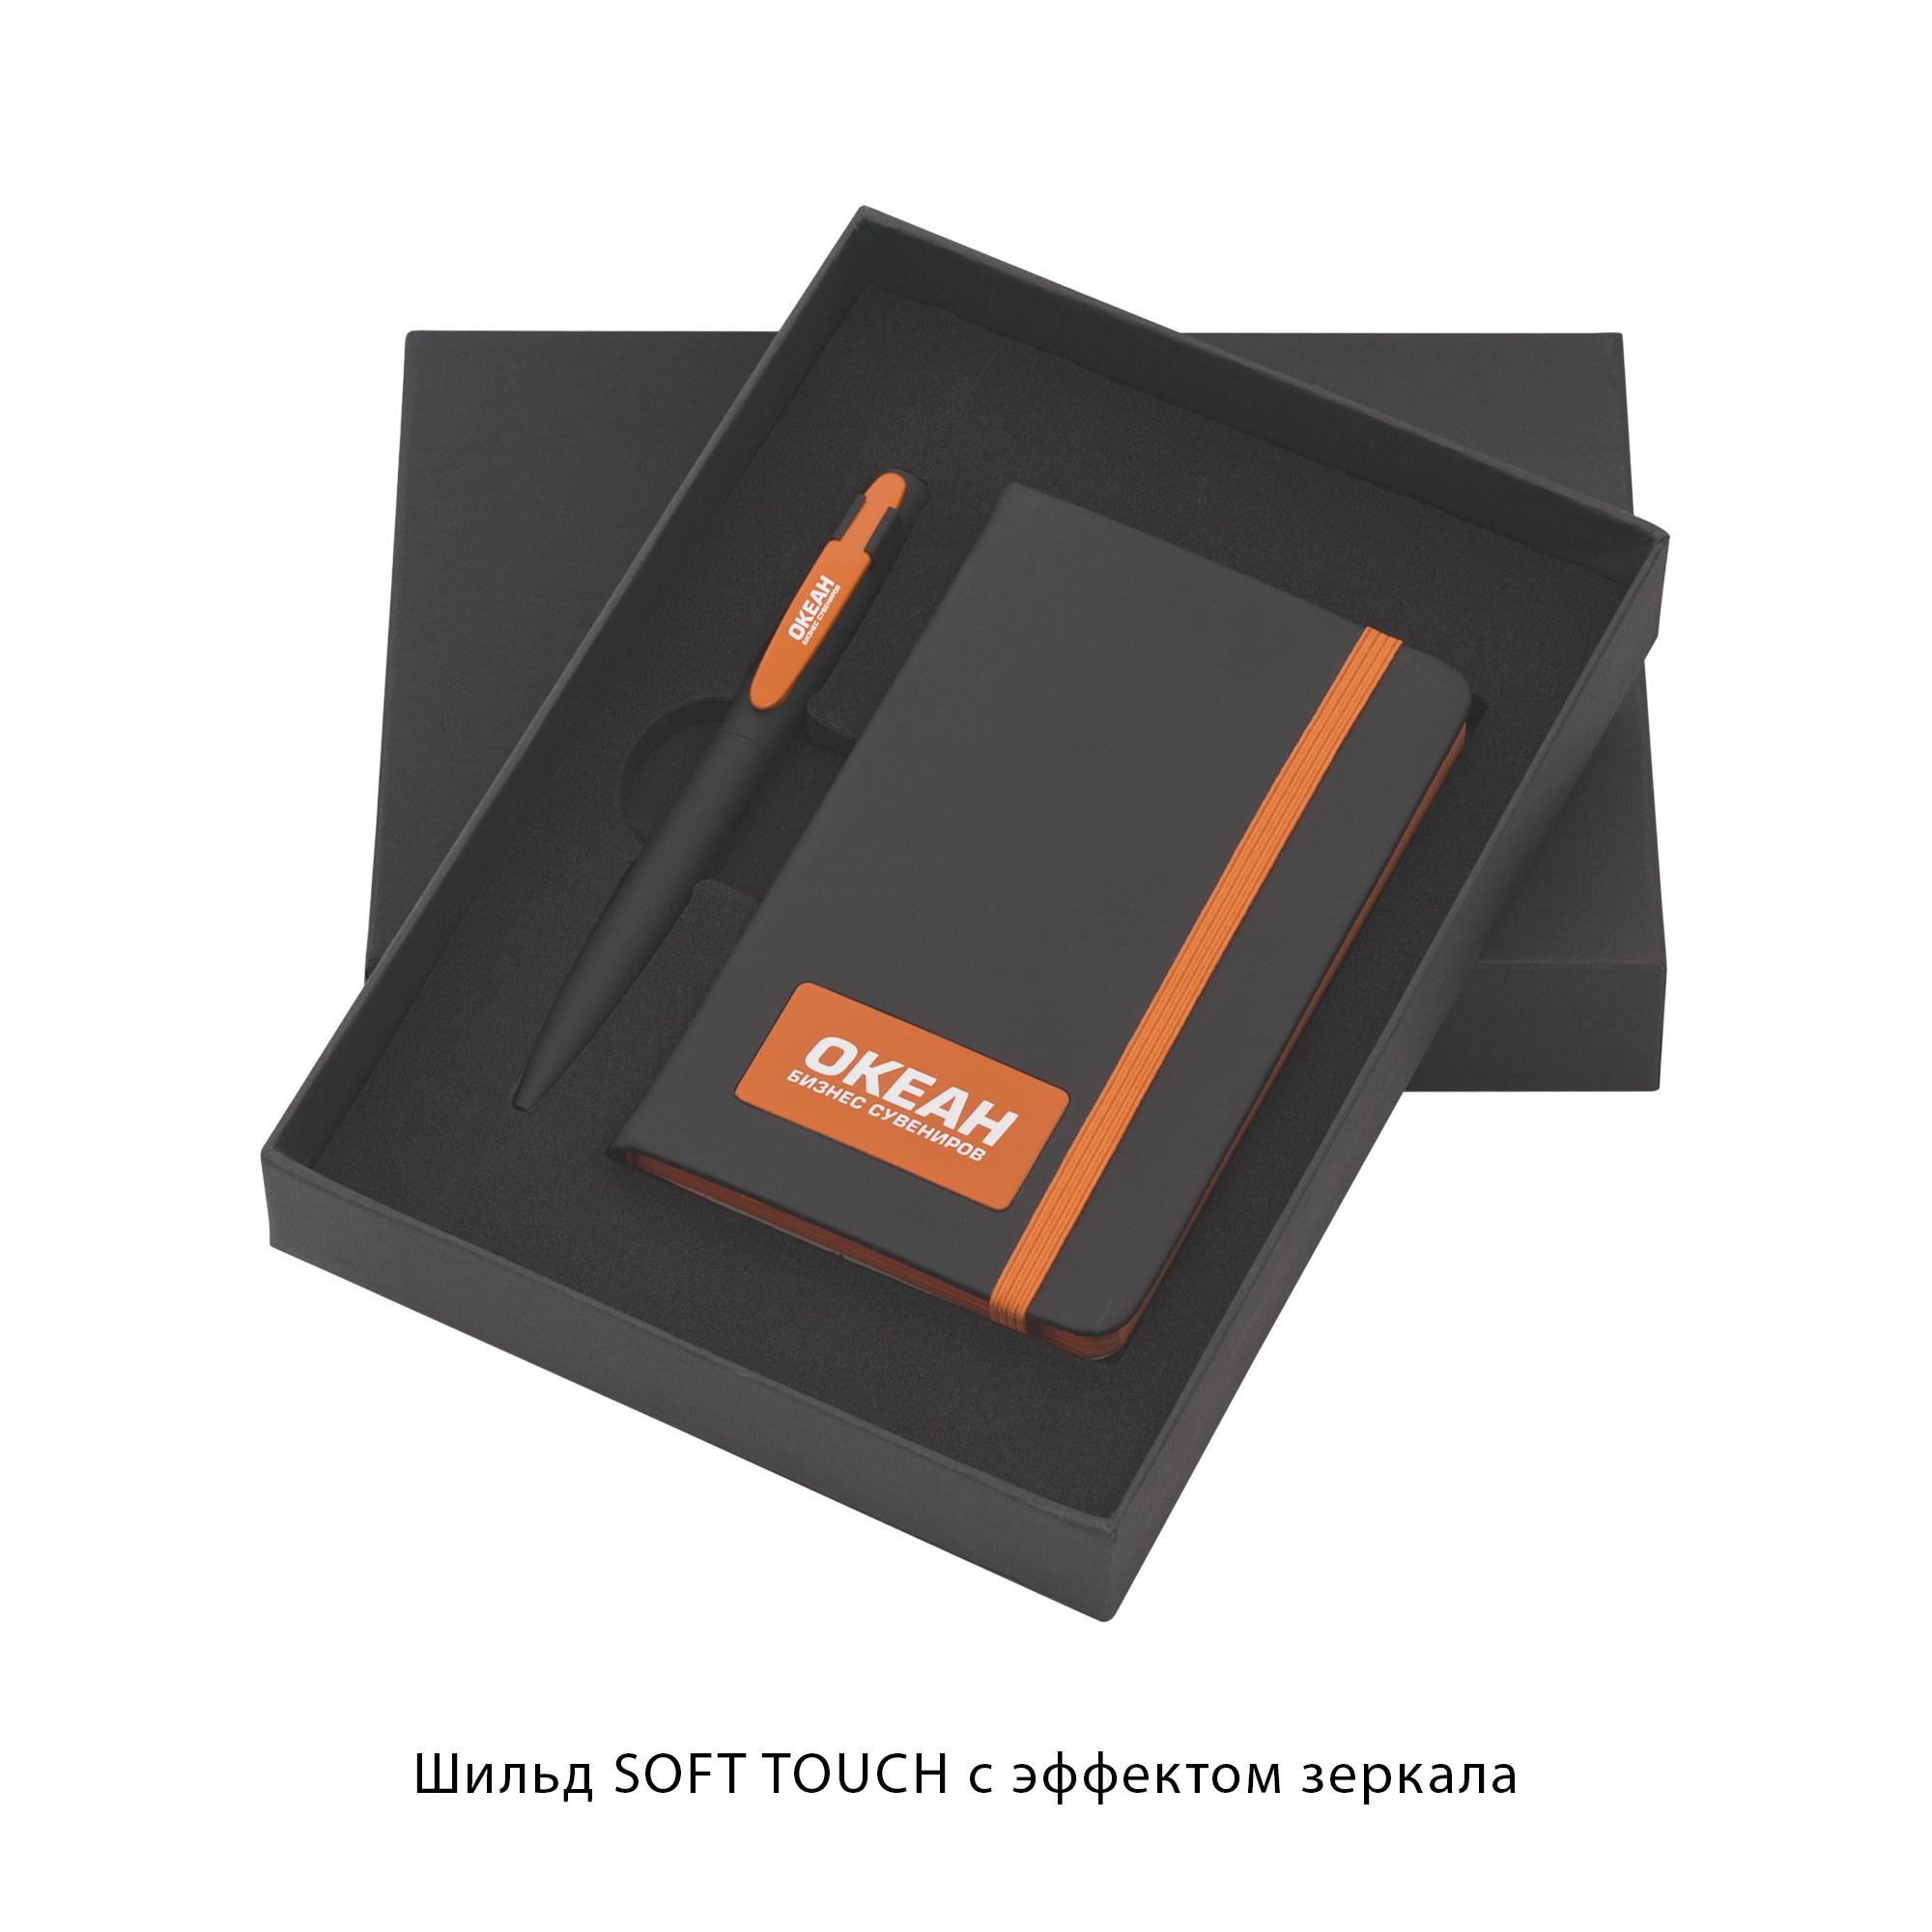 Набор подарочный "Таранто", покрытие soft touch#, цвет черный с оранжевым, фото 2